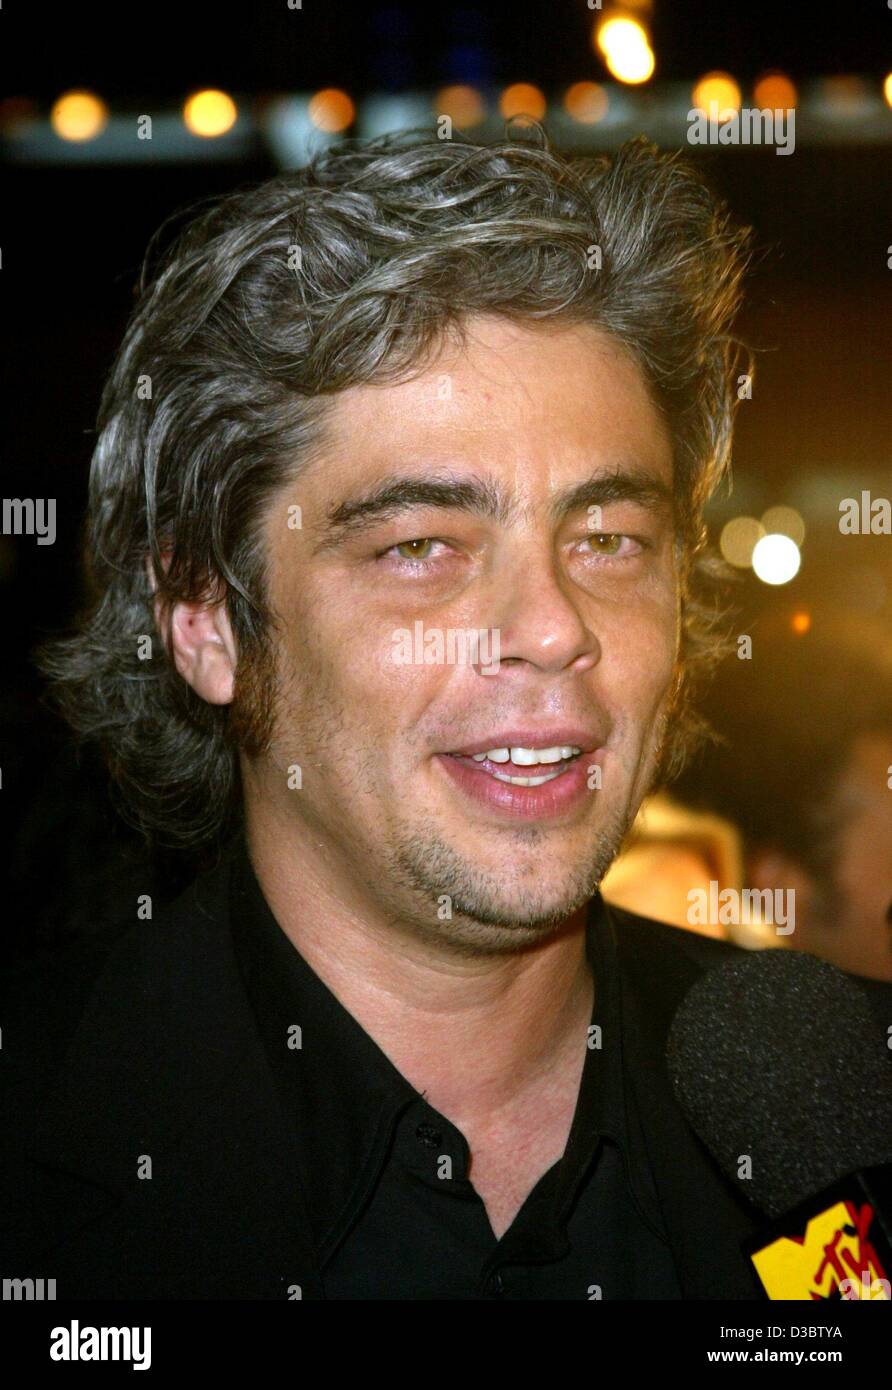 (Dpa) - El actor mexicano Benicio Del Toro habla en un micrófono durante el Filmfestival de Toronto en Canadá, el 8 de septiembre de 2003. Foto de stock